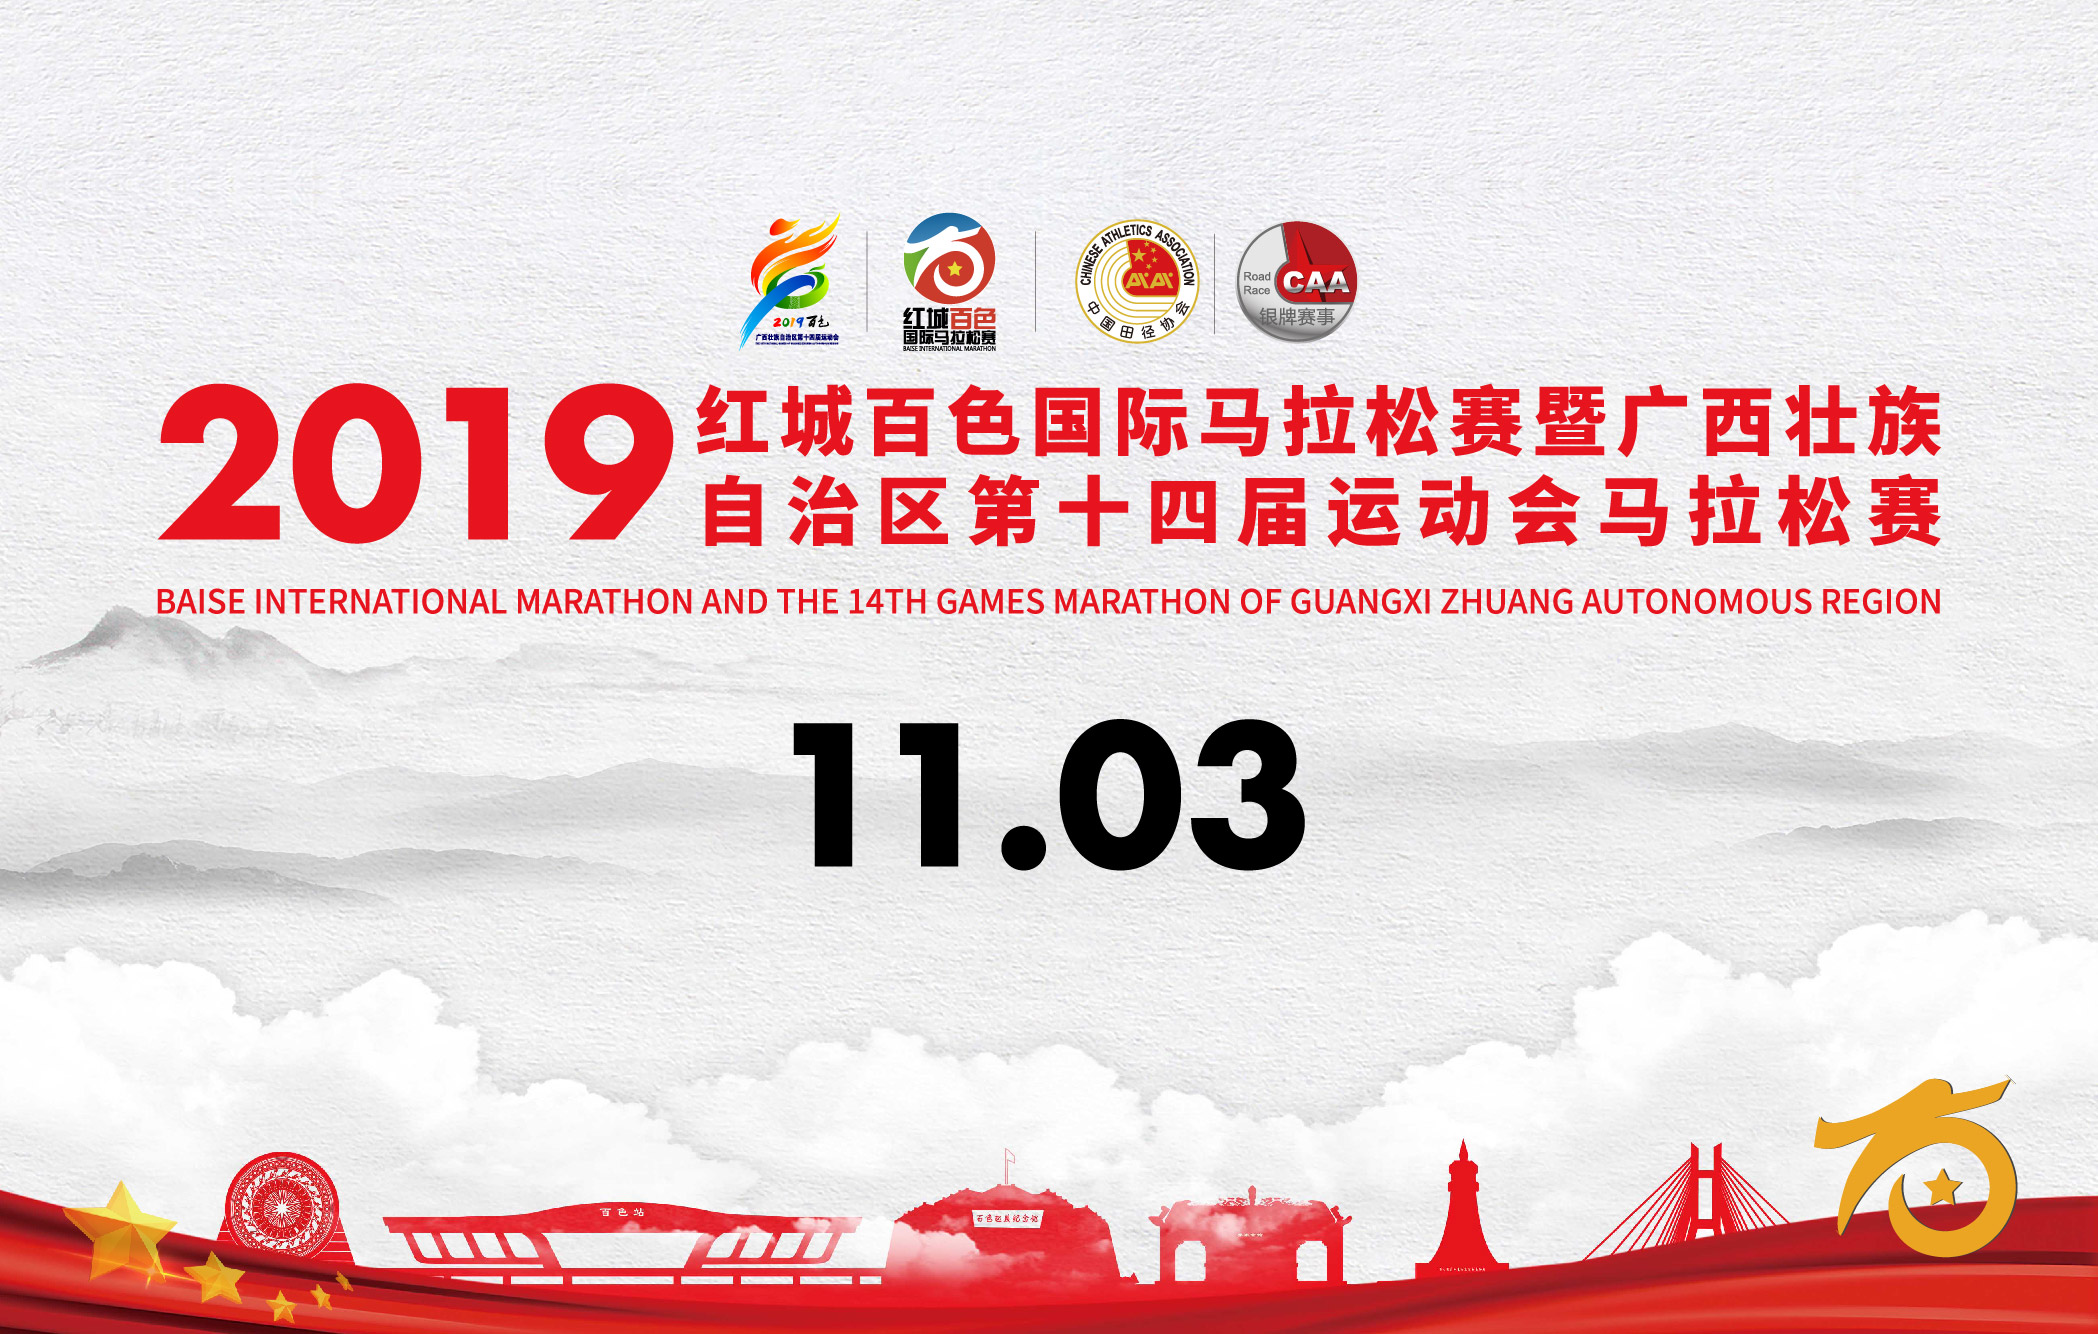 2019红城百色国际马拉松赛暨广西壮族自治区第十四届运动会马拉松赛